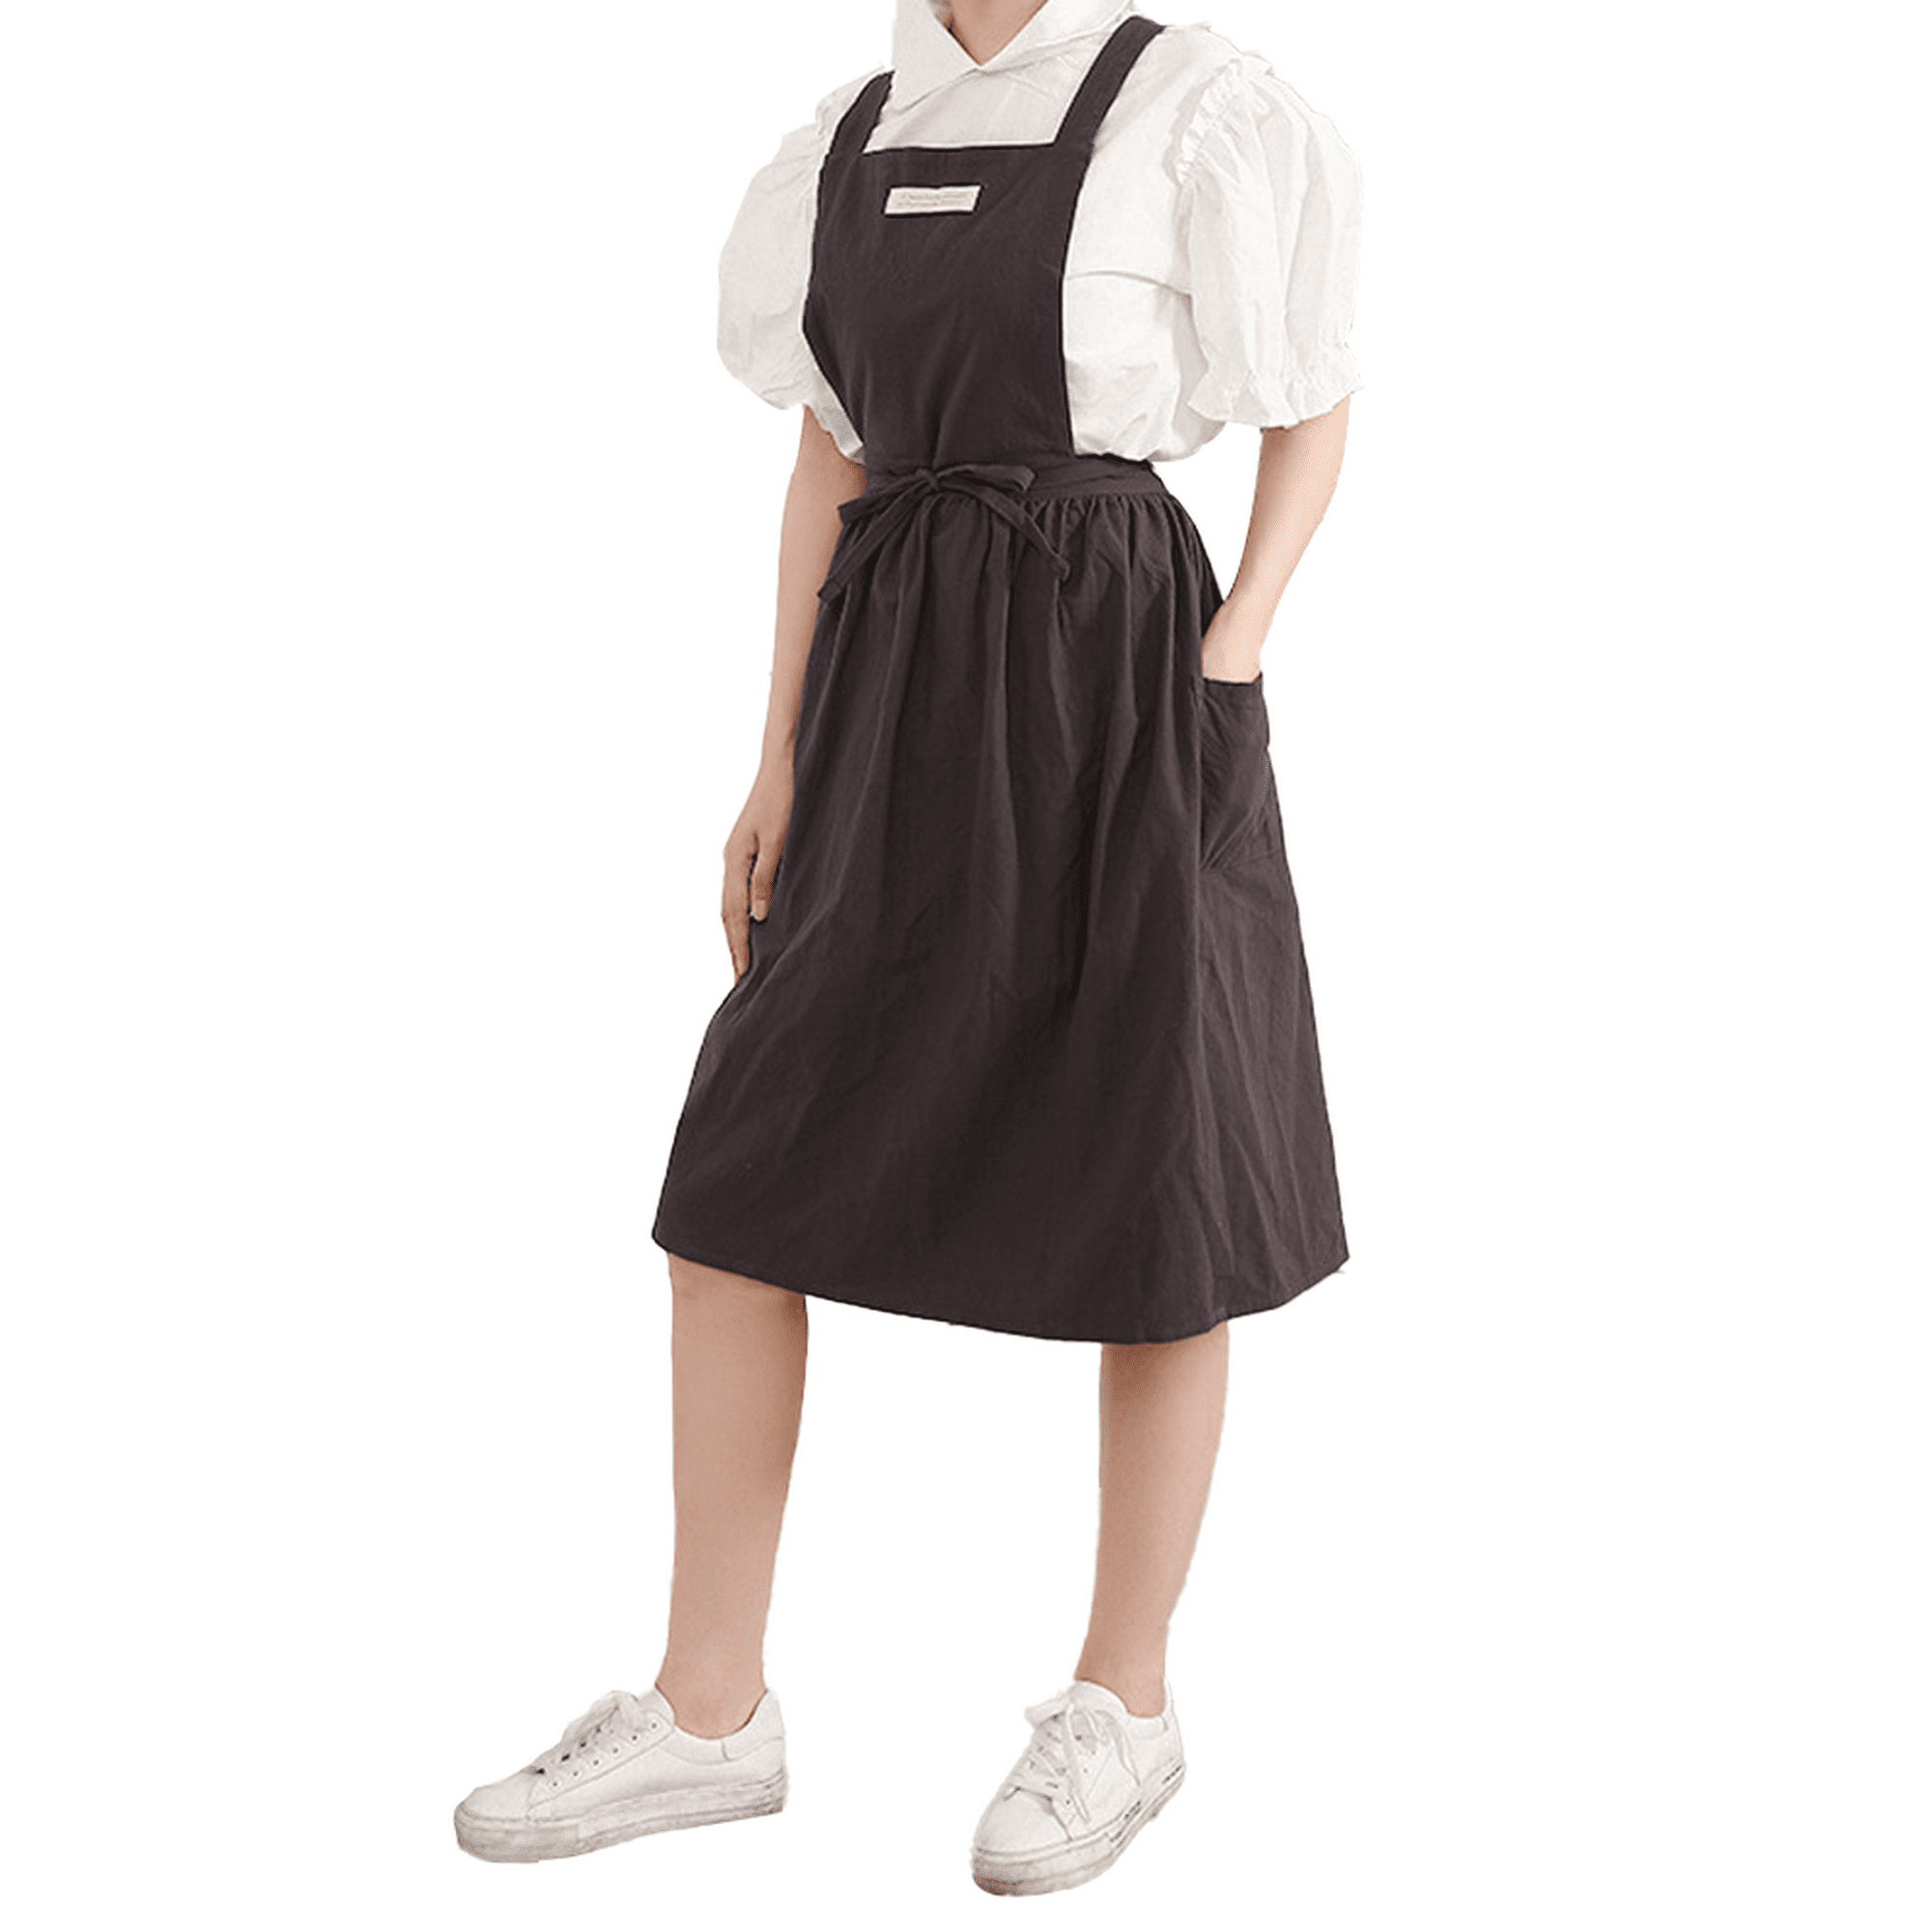 Delantal japonés para mujer, con 2 bolsillos, espalda cruzada, lindo  vestido de pinafore para cocina, cocina, jardinería, pintura